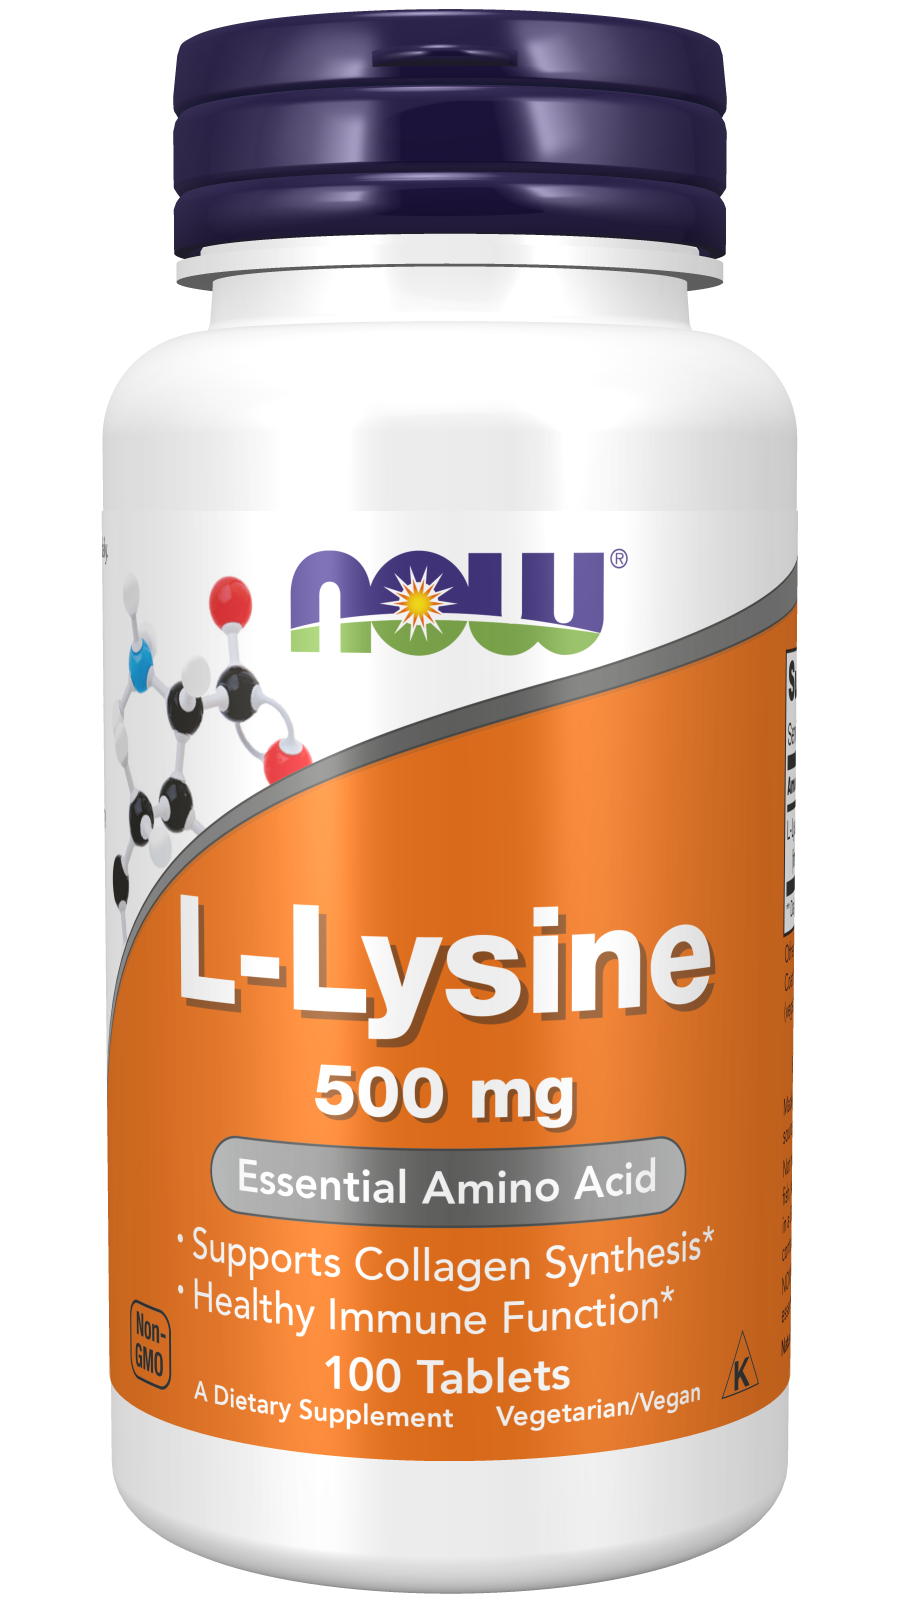 L-Lysine 500 mg - 100 Tablets Bottle Front